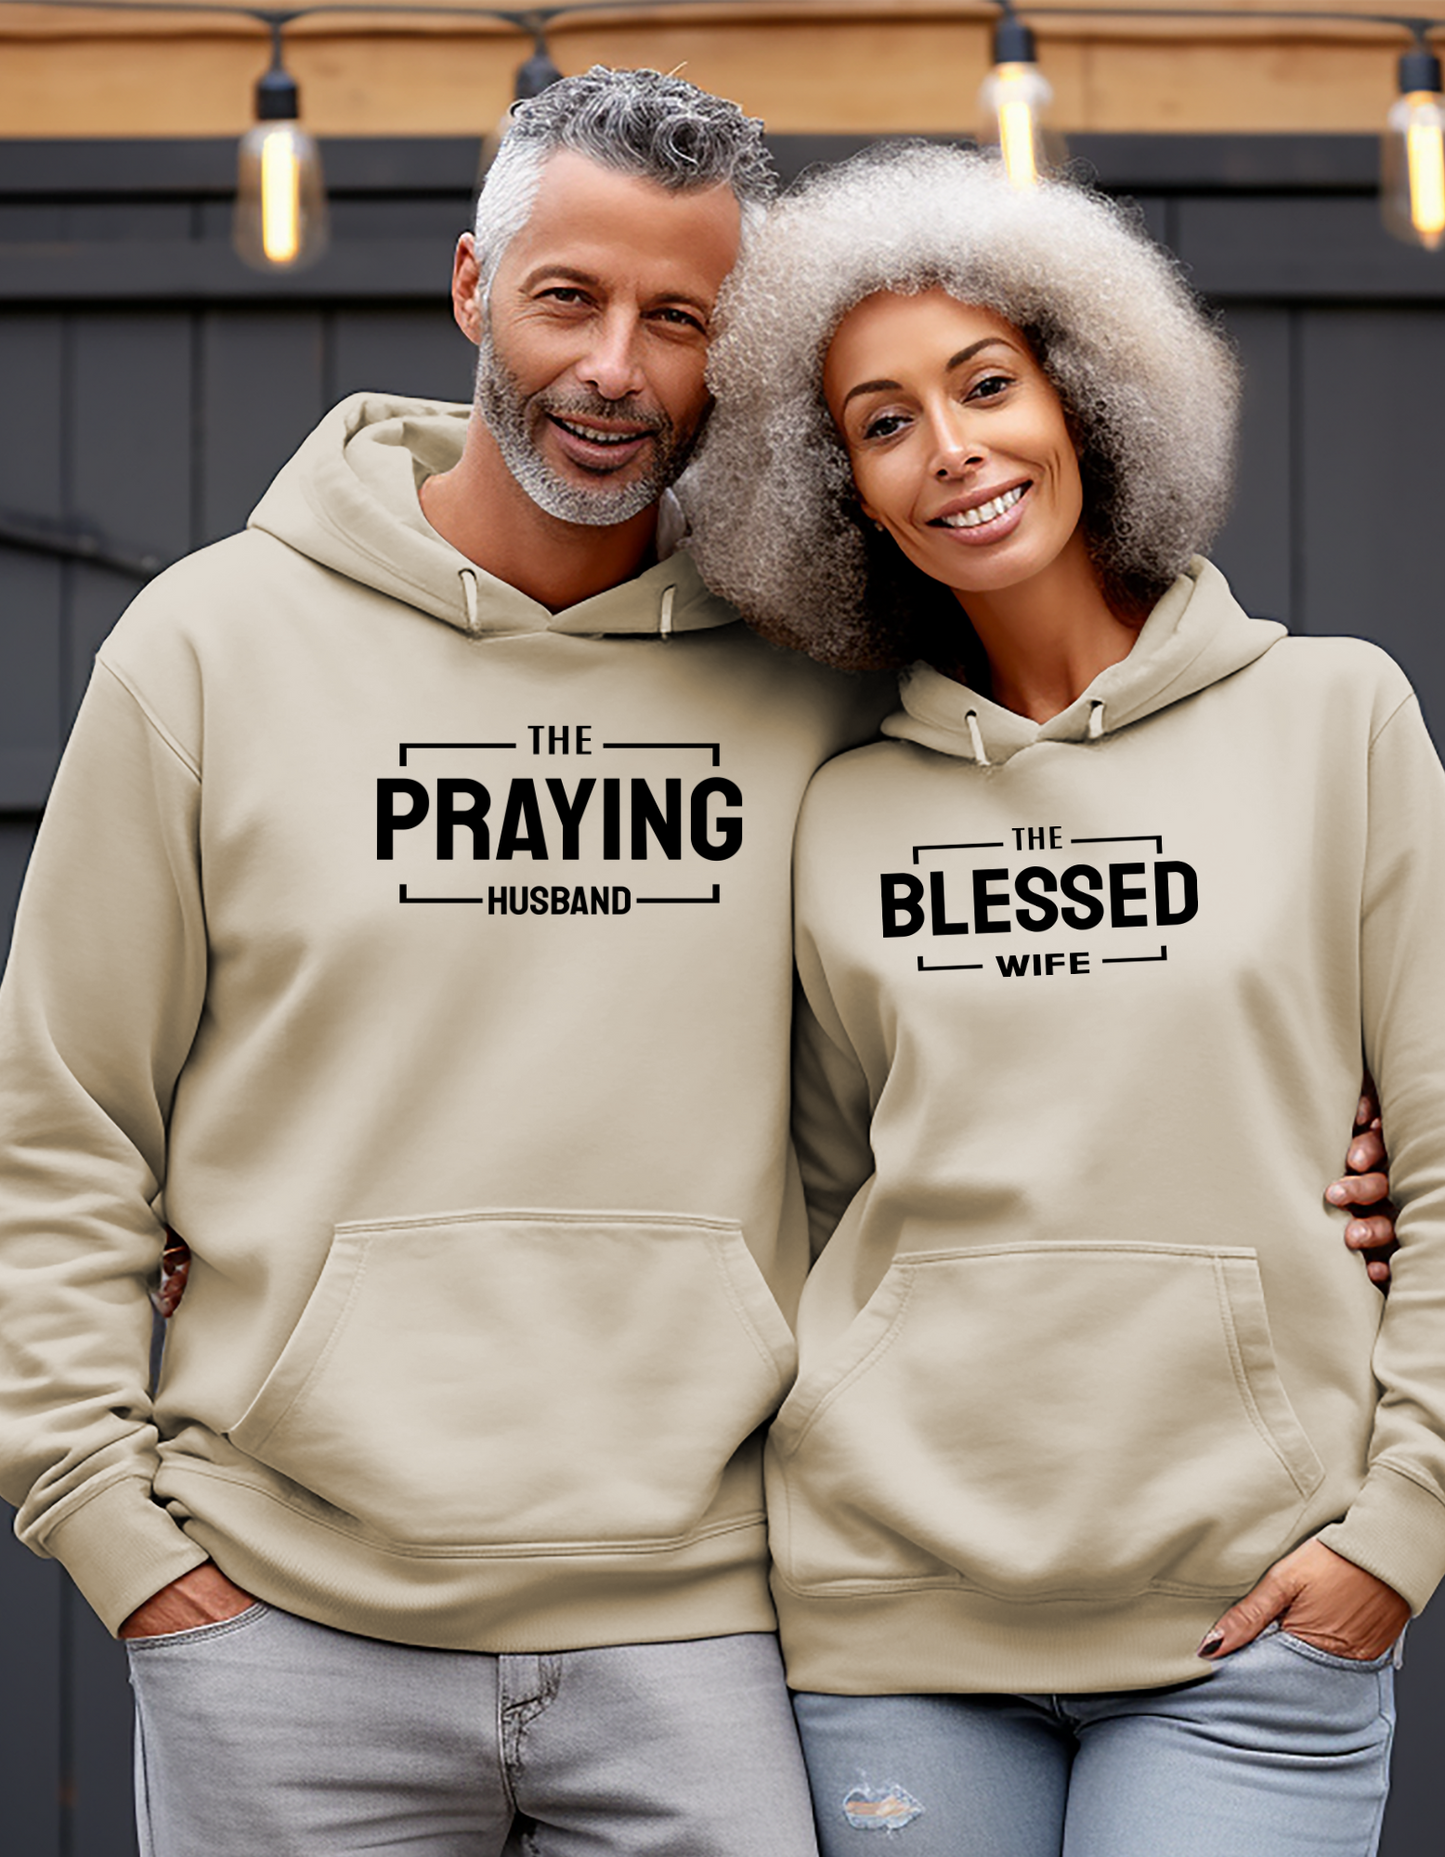 Praying Husband Blessed Wife Unisex Hoodie, Couples Matching Drawstring Sweatshirt